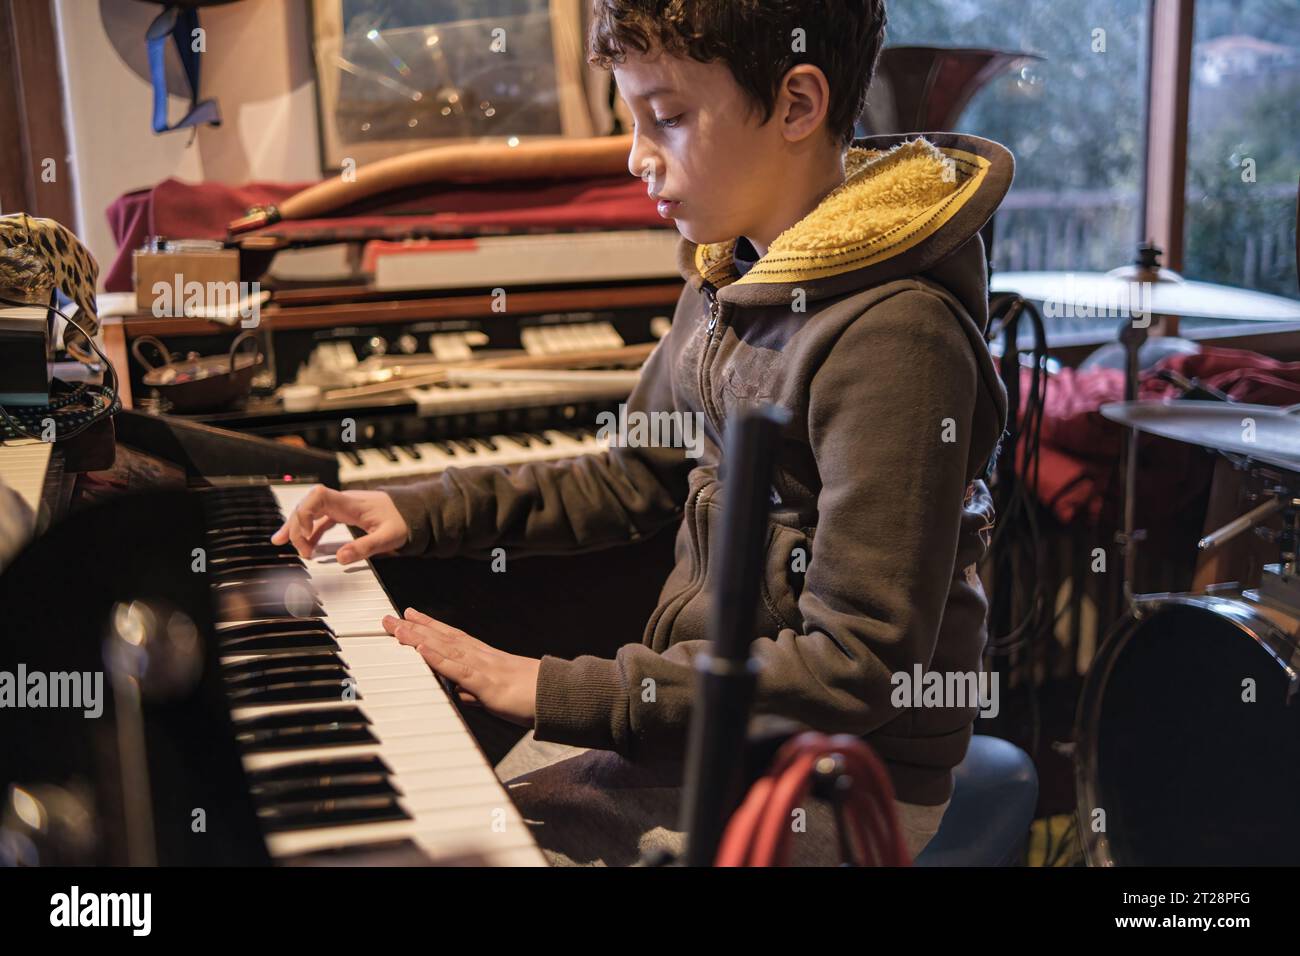 Ein 10-jähriges Kind zeigt sein Talent und spielt leidenschaftlich die Orgel in einem Proberaum, eingetaucht in die Welt der Musik. Stockfoto